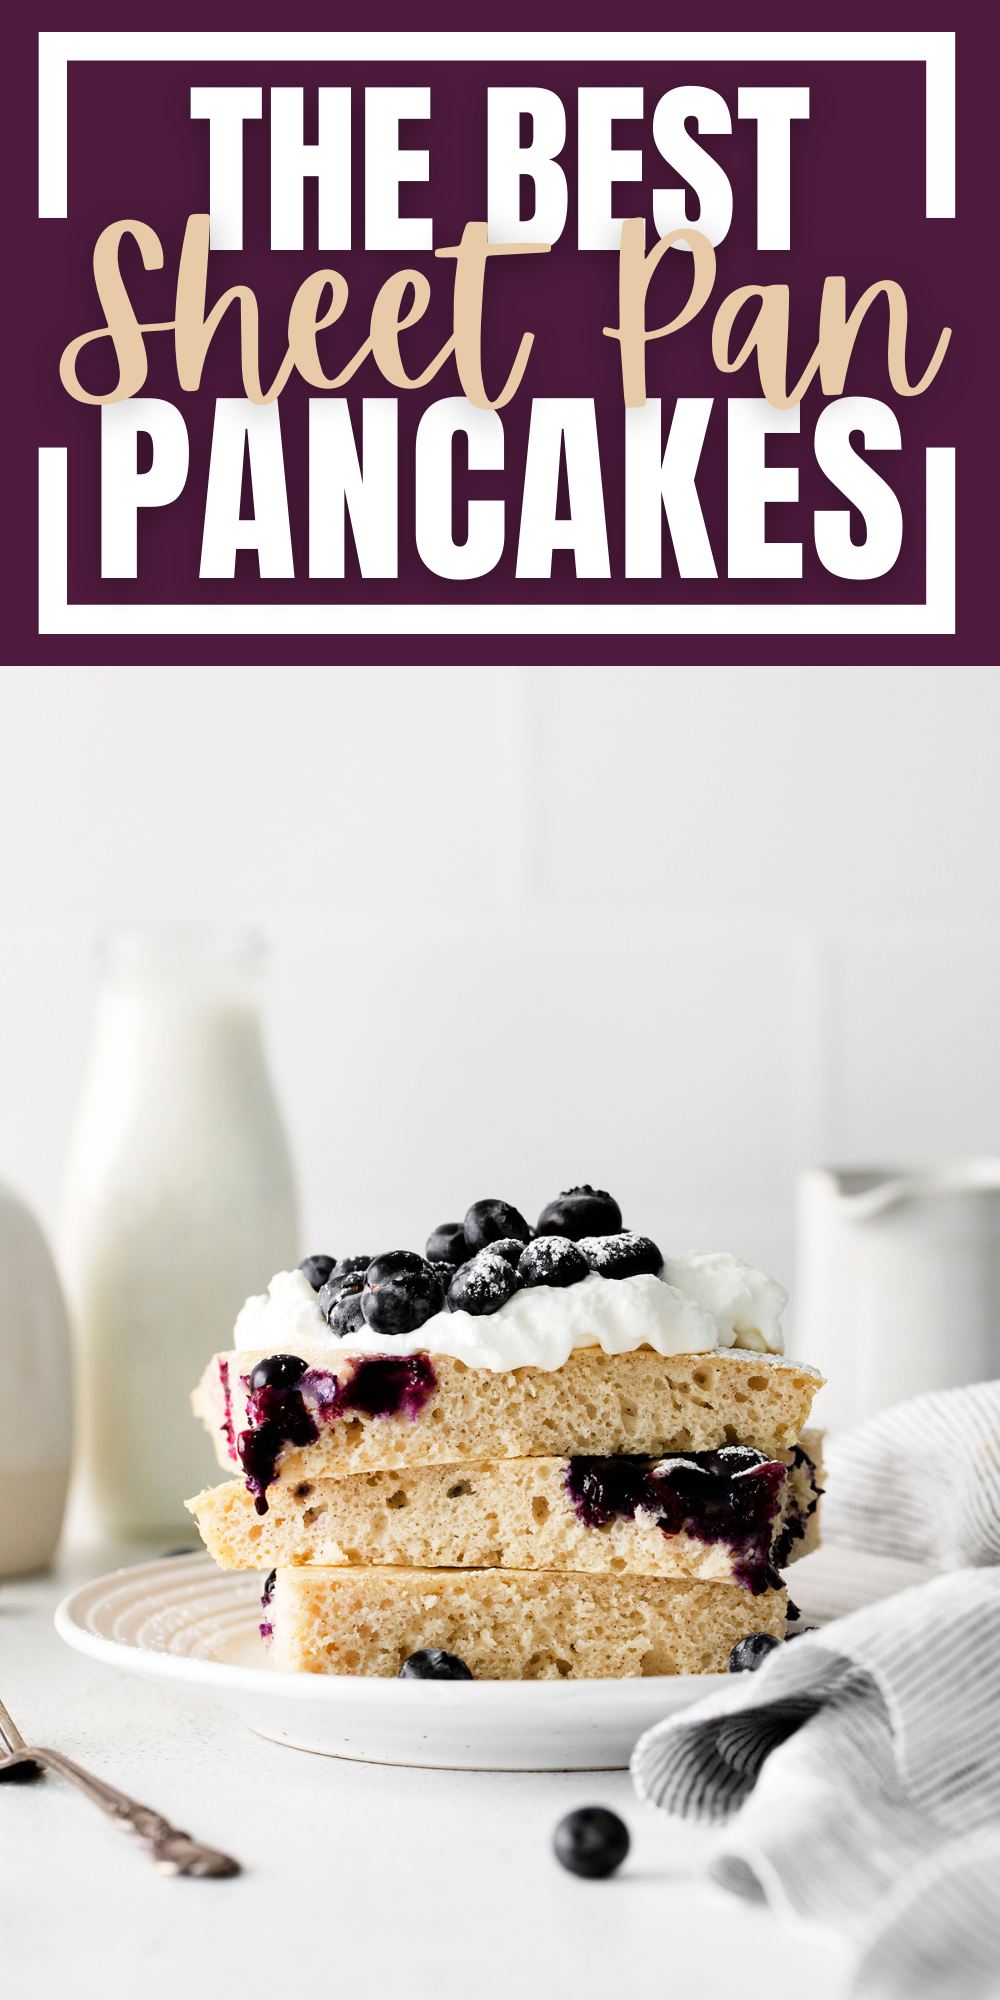 The Best Sheet Pan Pancakes